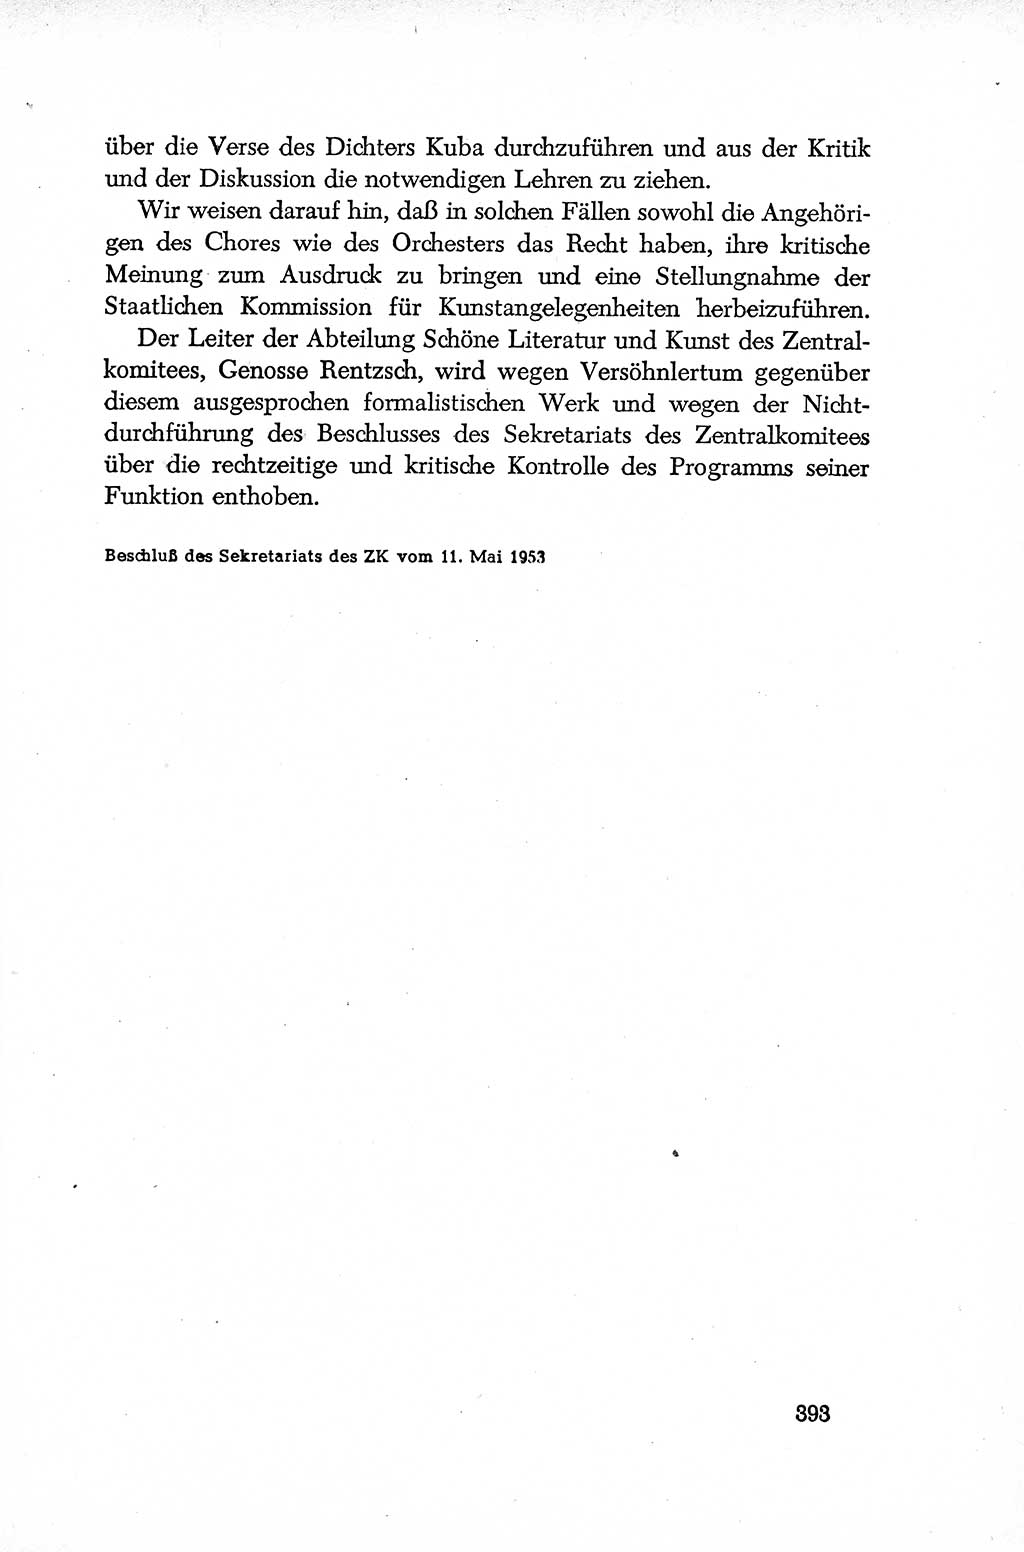 Dokumente der Sozialistischen Einheitspartei Deutschlands (SED) [Deutsche Demokratische Republik (DDR)] 1952-1953, Seite 393 (Dok. SED DDR 1952-1953, S. 393)